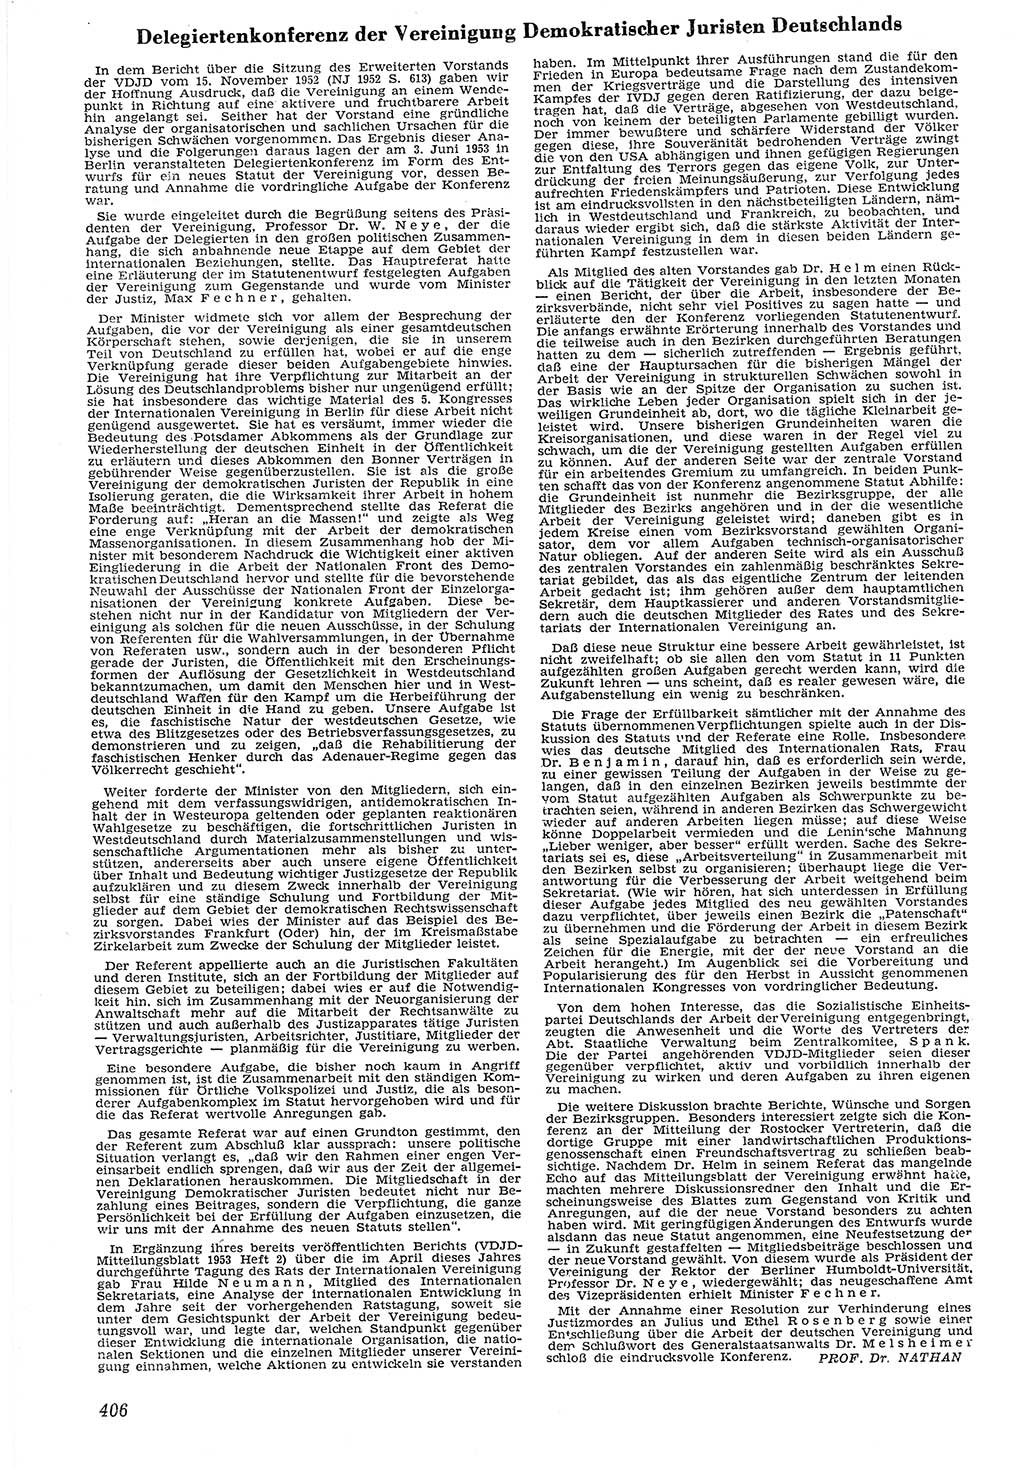 Neue Justiz (NJ), Zeitschrift für Recht und Rechtswissenschaft [Deutsche Demokratische Republik (DDR)], 7. Jahrgang 1953, Seite 406 (NJ DDR 1953, S. 406)